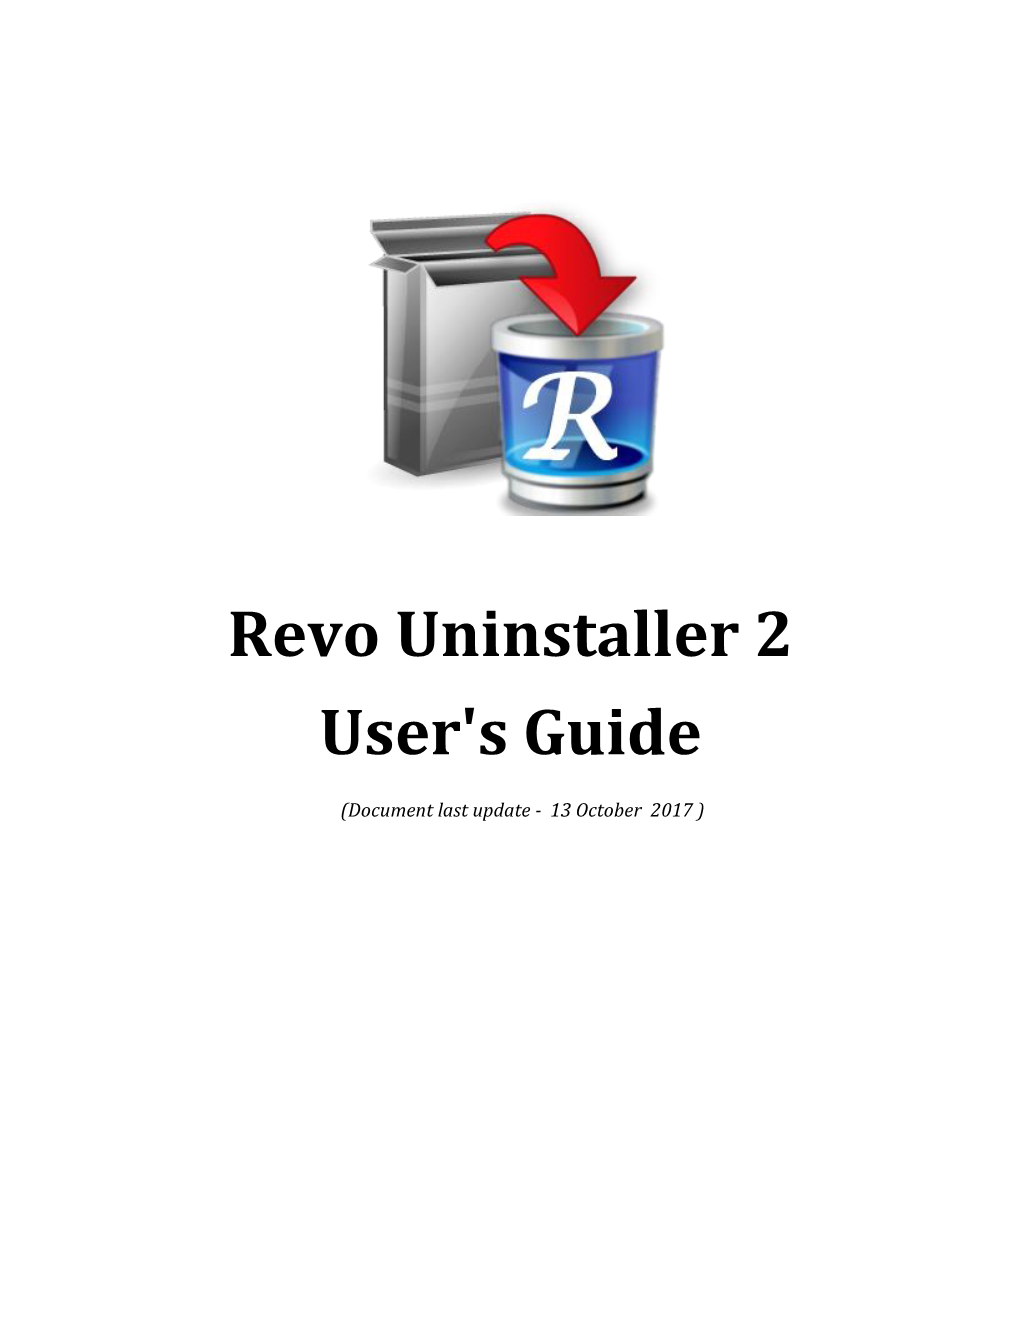 Revo Uninstaller 2 User's Guide